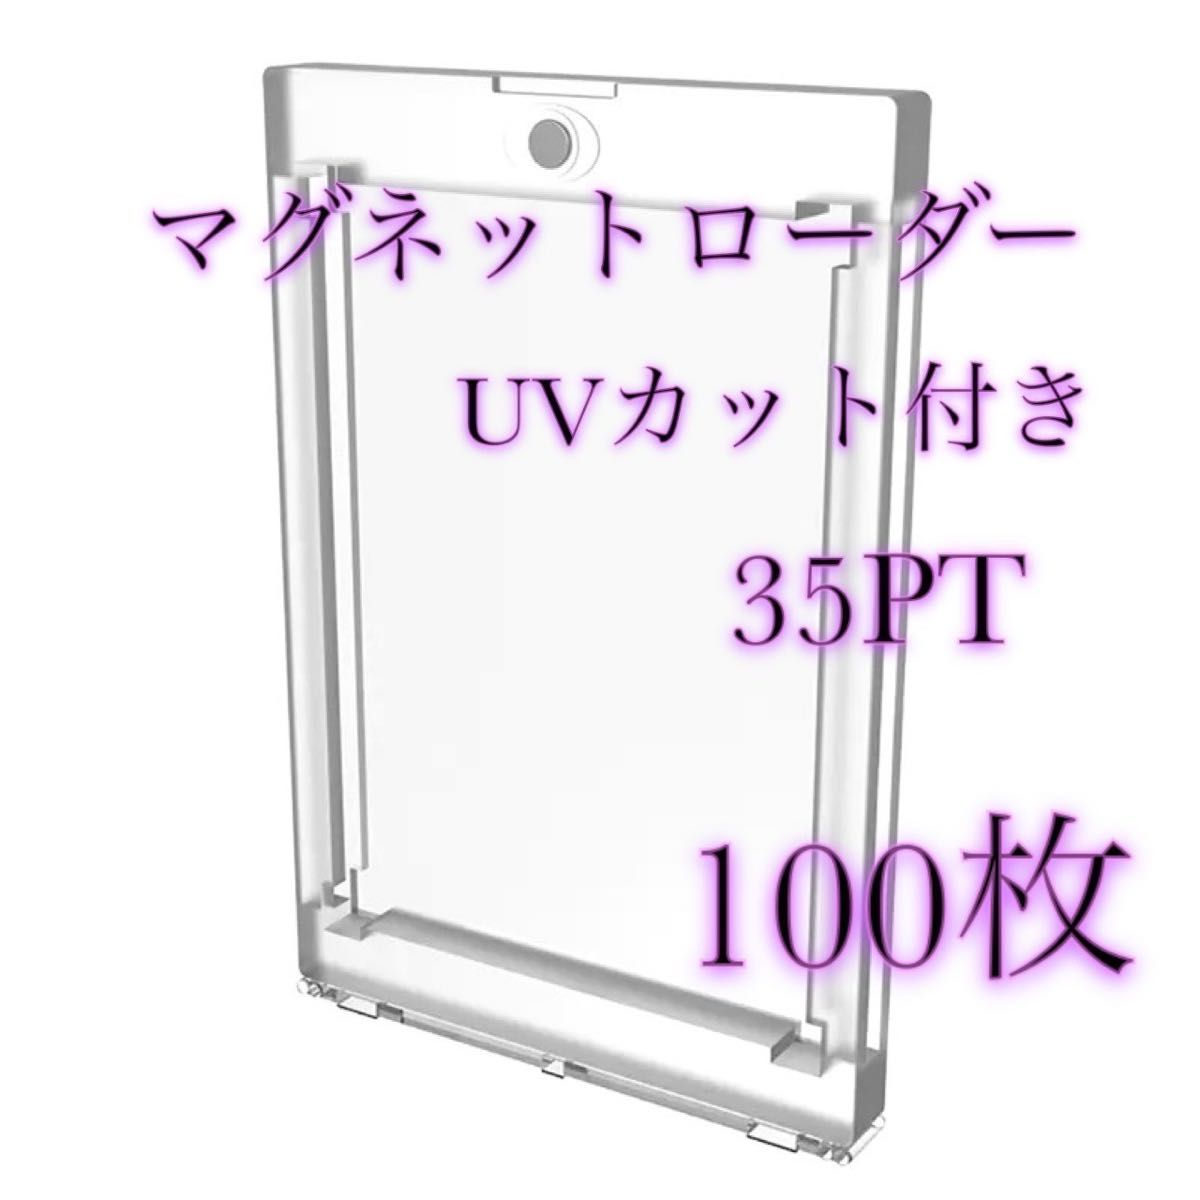 [高品質] UVカット 35PT仕様 マグネットローダー 100個セット